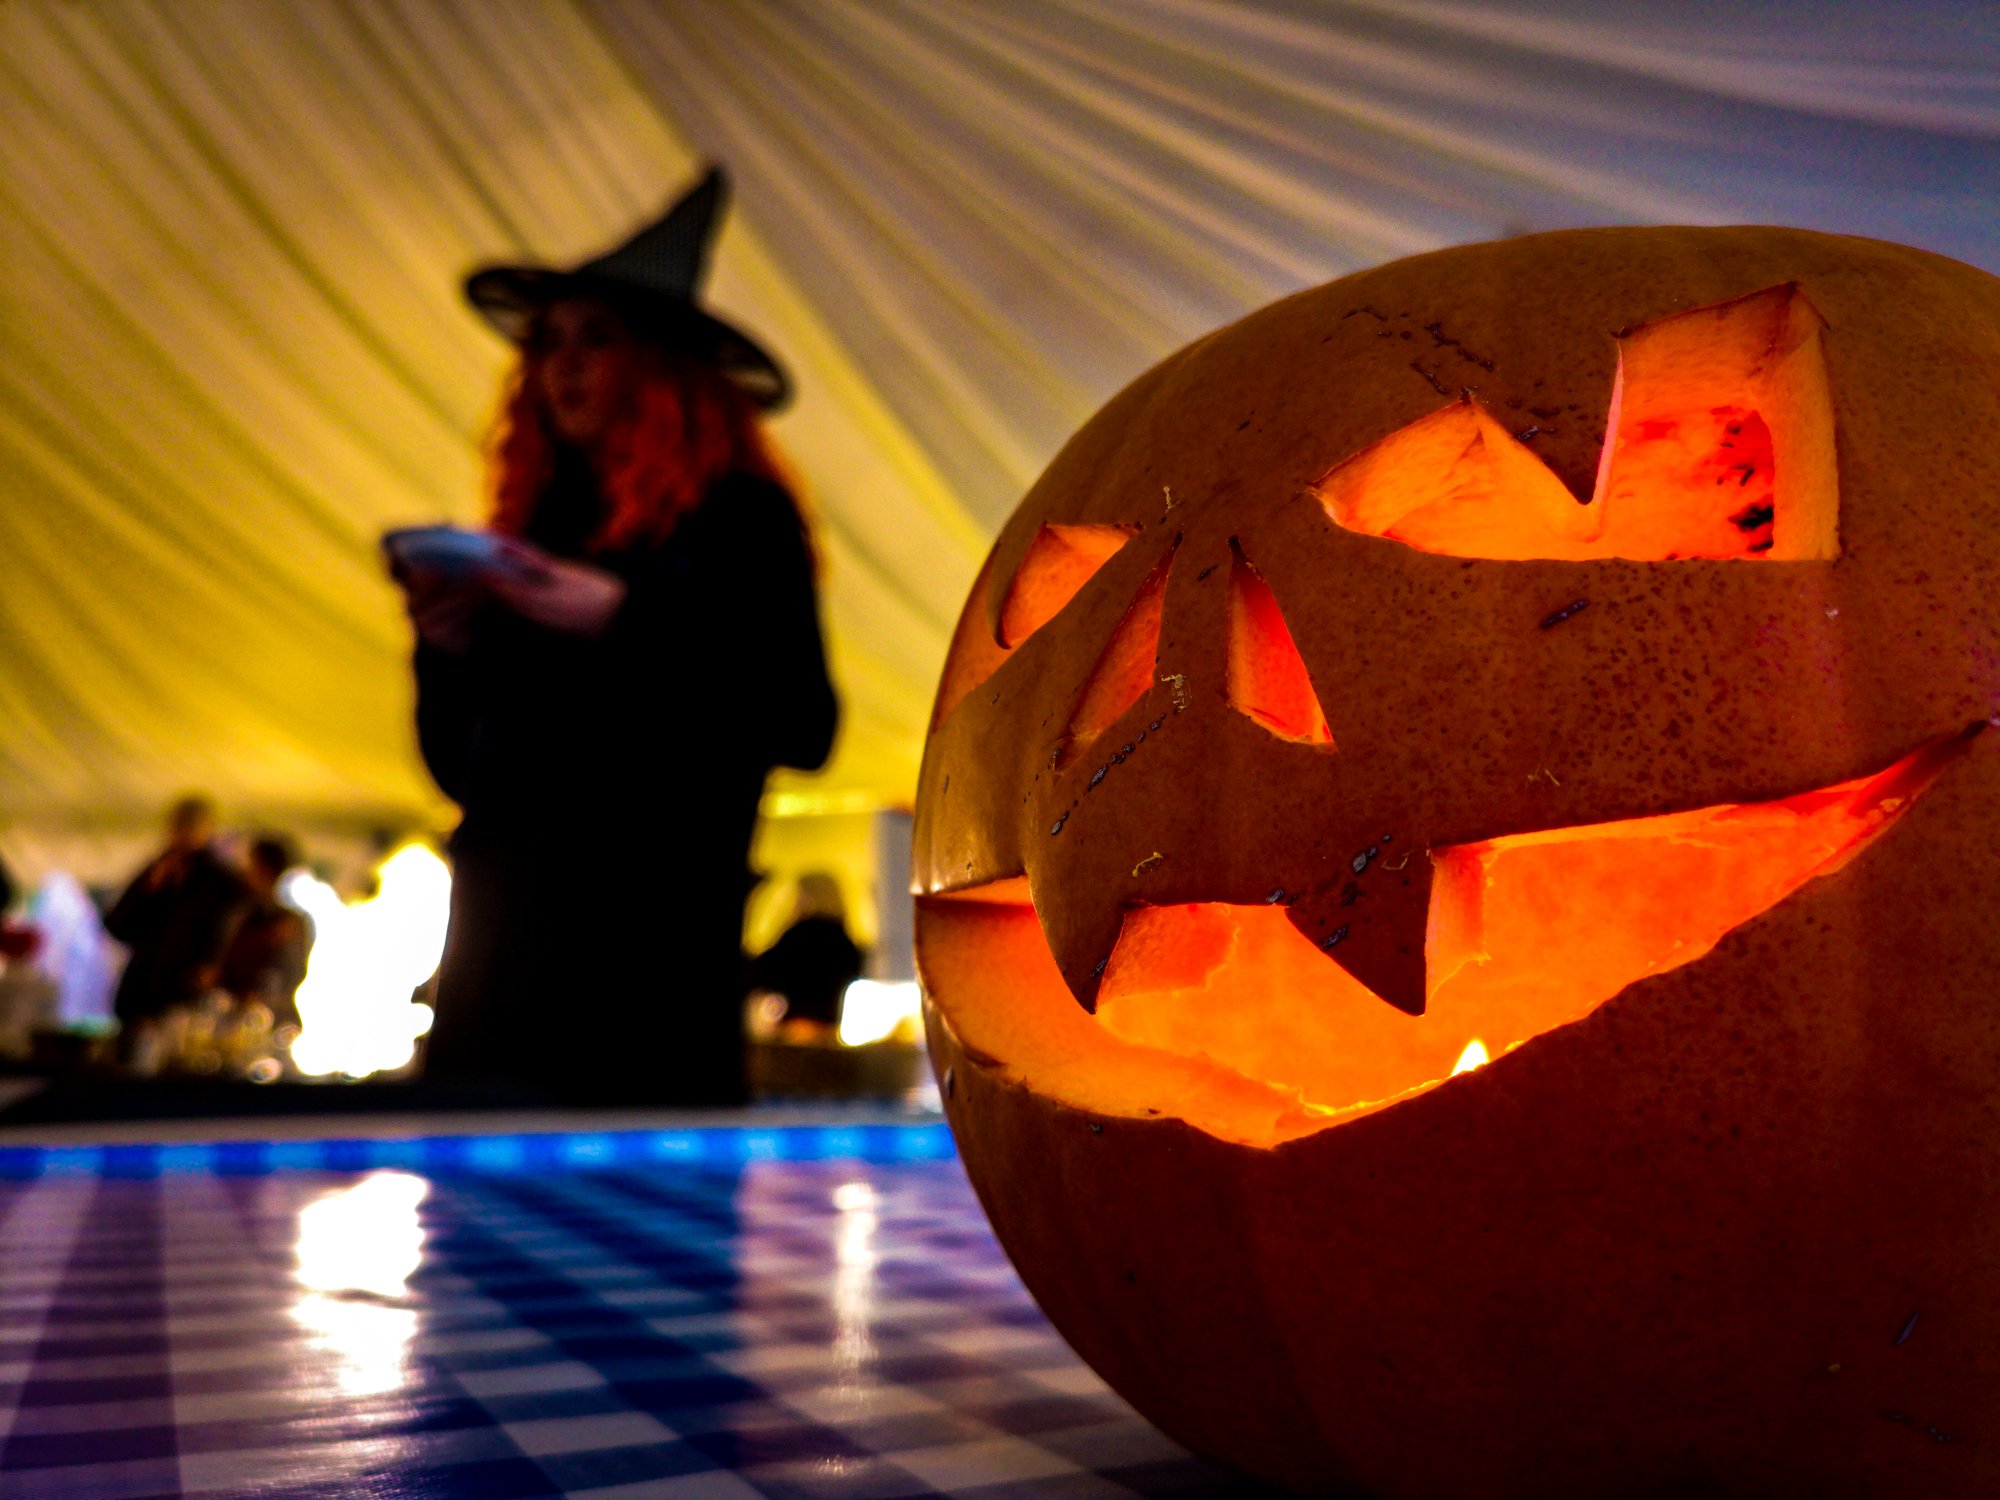 Witch - Pumpkin - Halloween - Lullingstone Castle.jpg